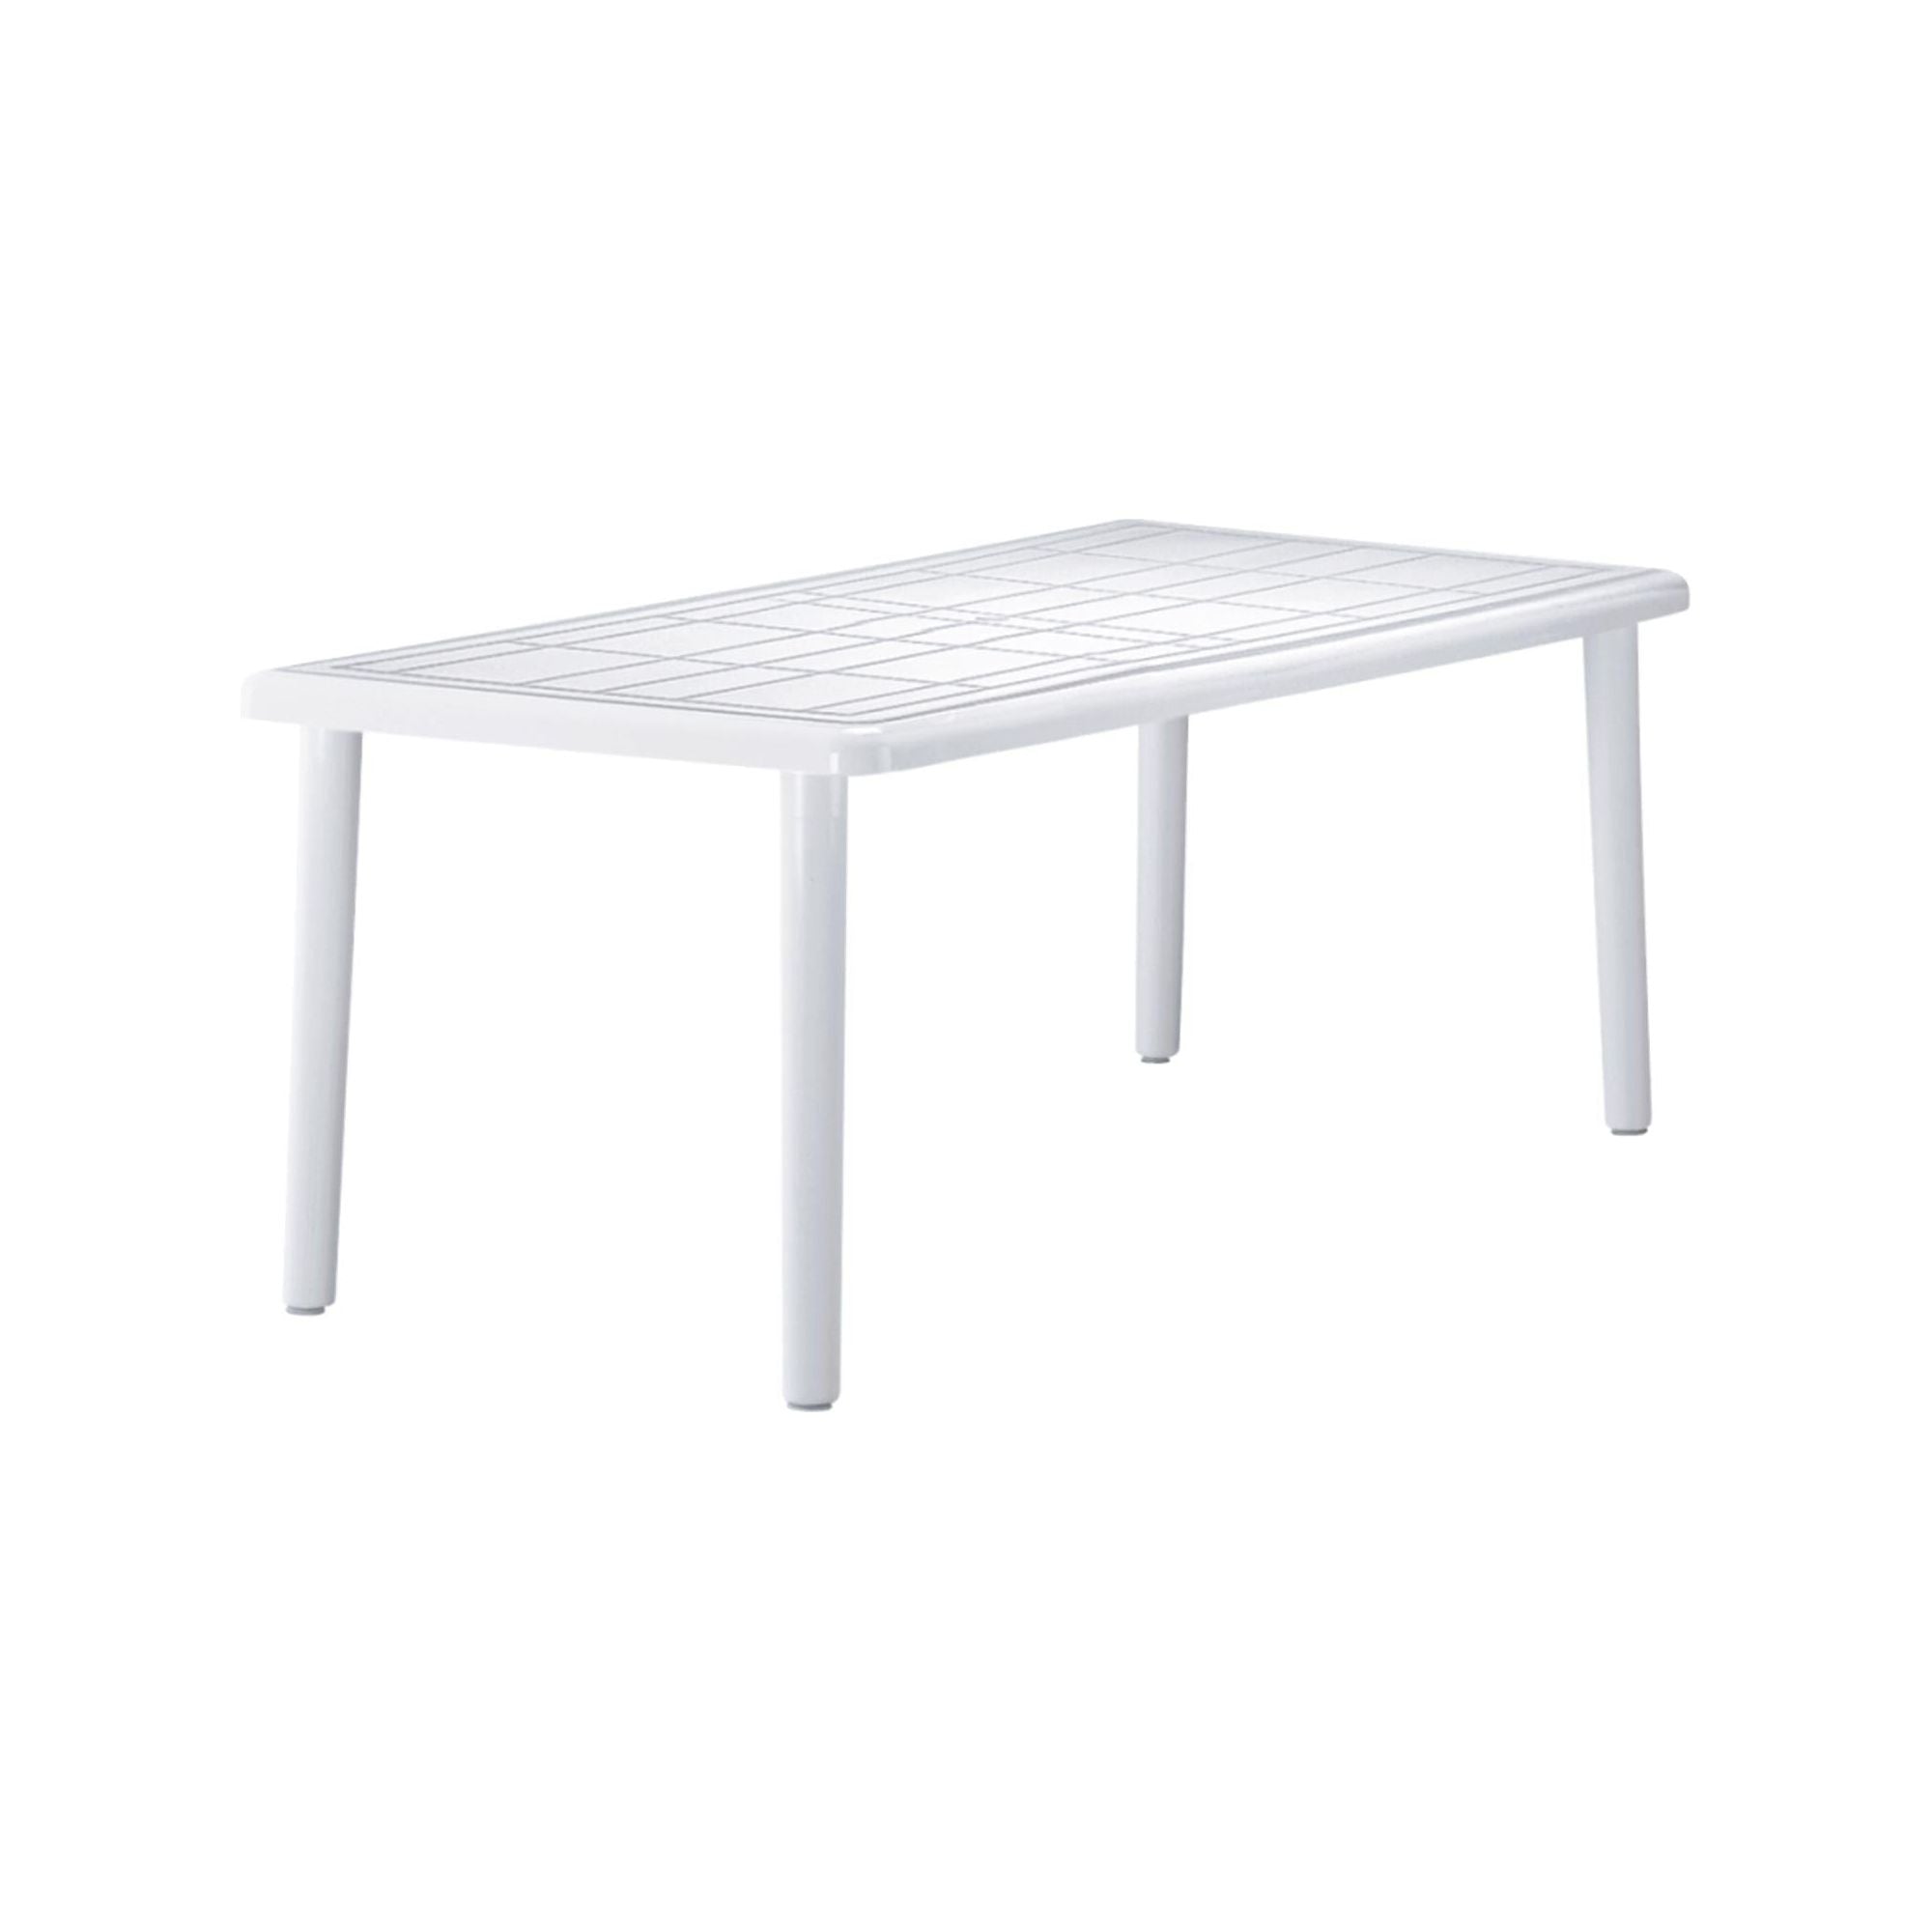 Garbar sevilla rectangular table outdoor 180x90 white